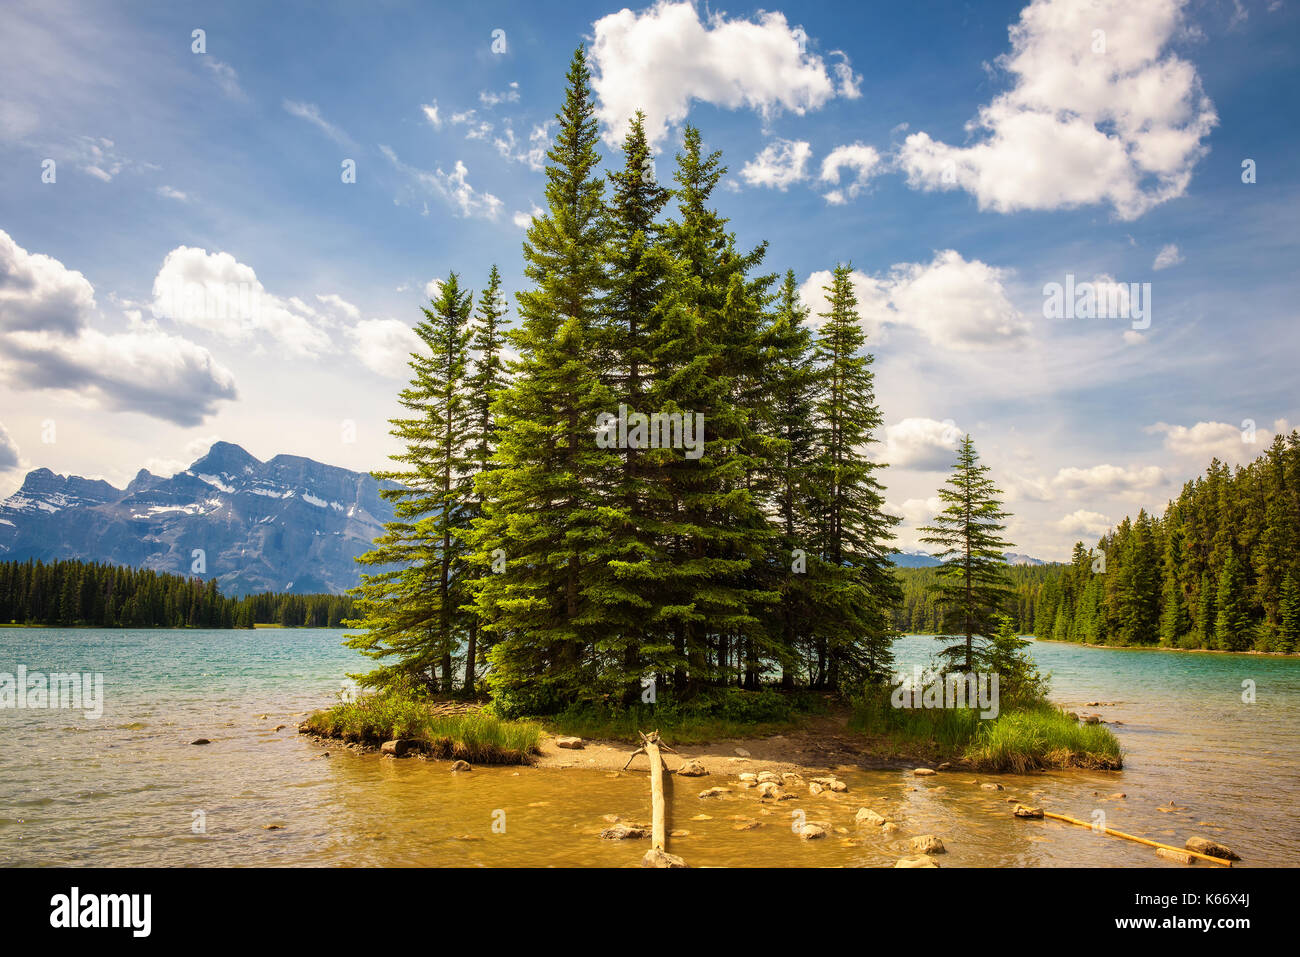 Piccola isola su due jack lago nel parco nazionale di Banff con mt. rundle in background. Foto Stock